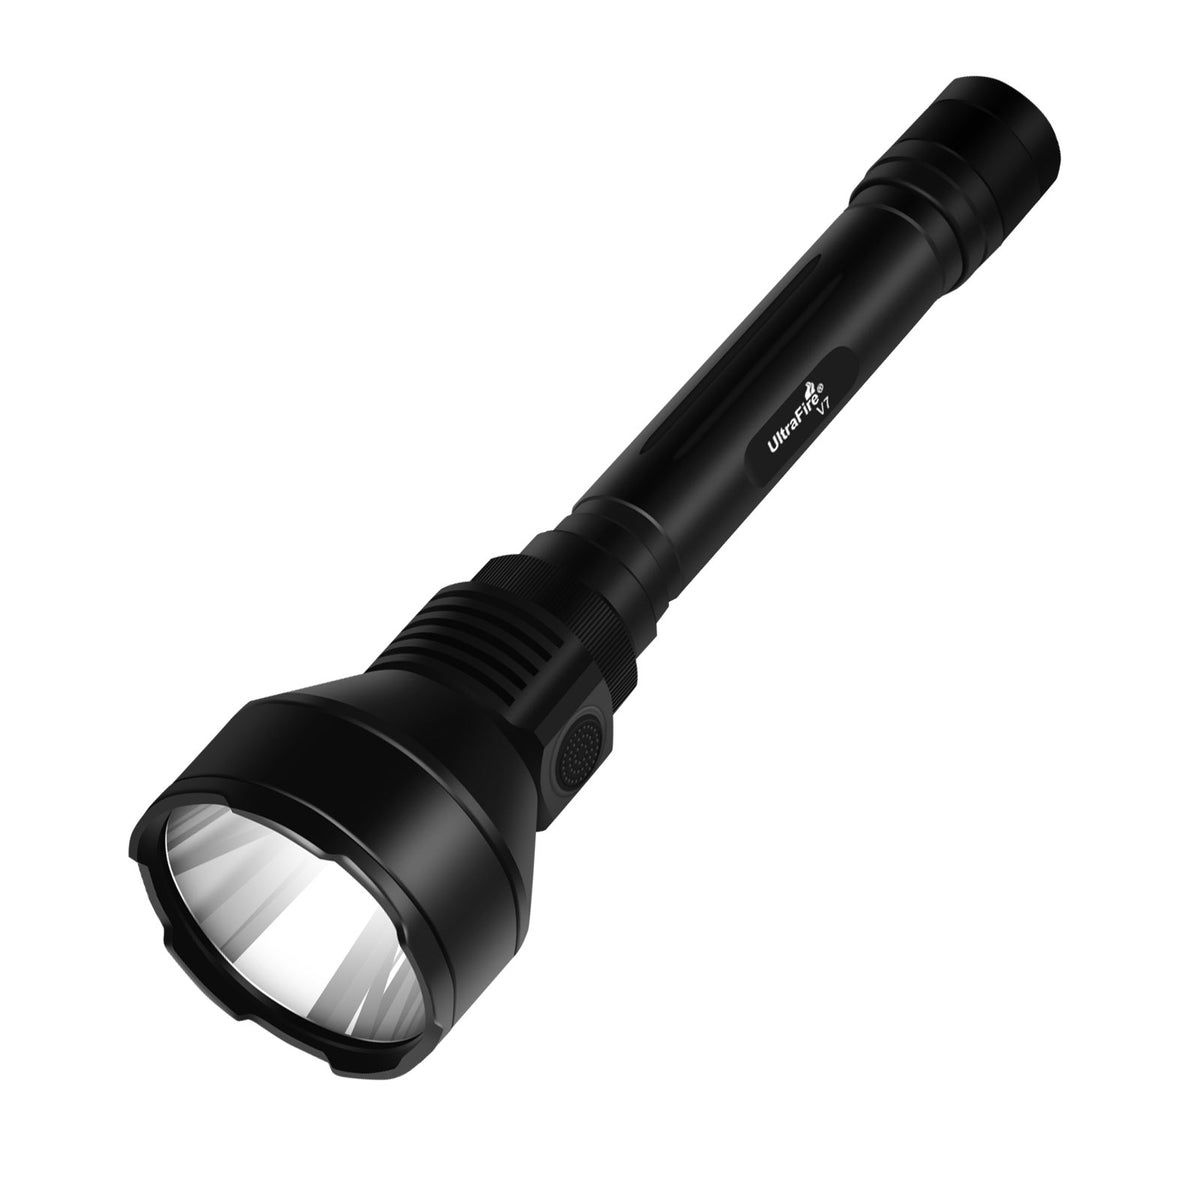 UltraFire V7 High Lumen Tactical Flashlight